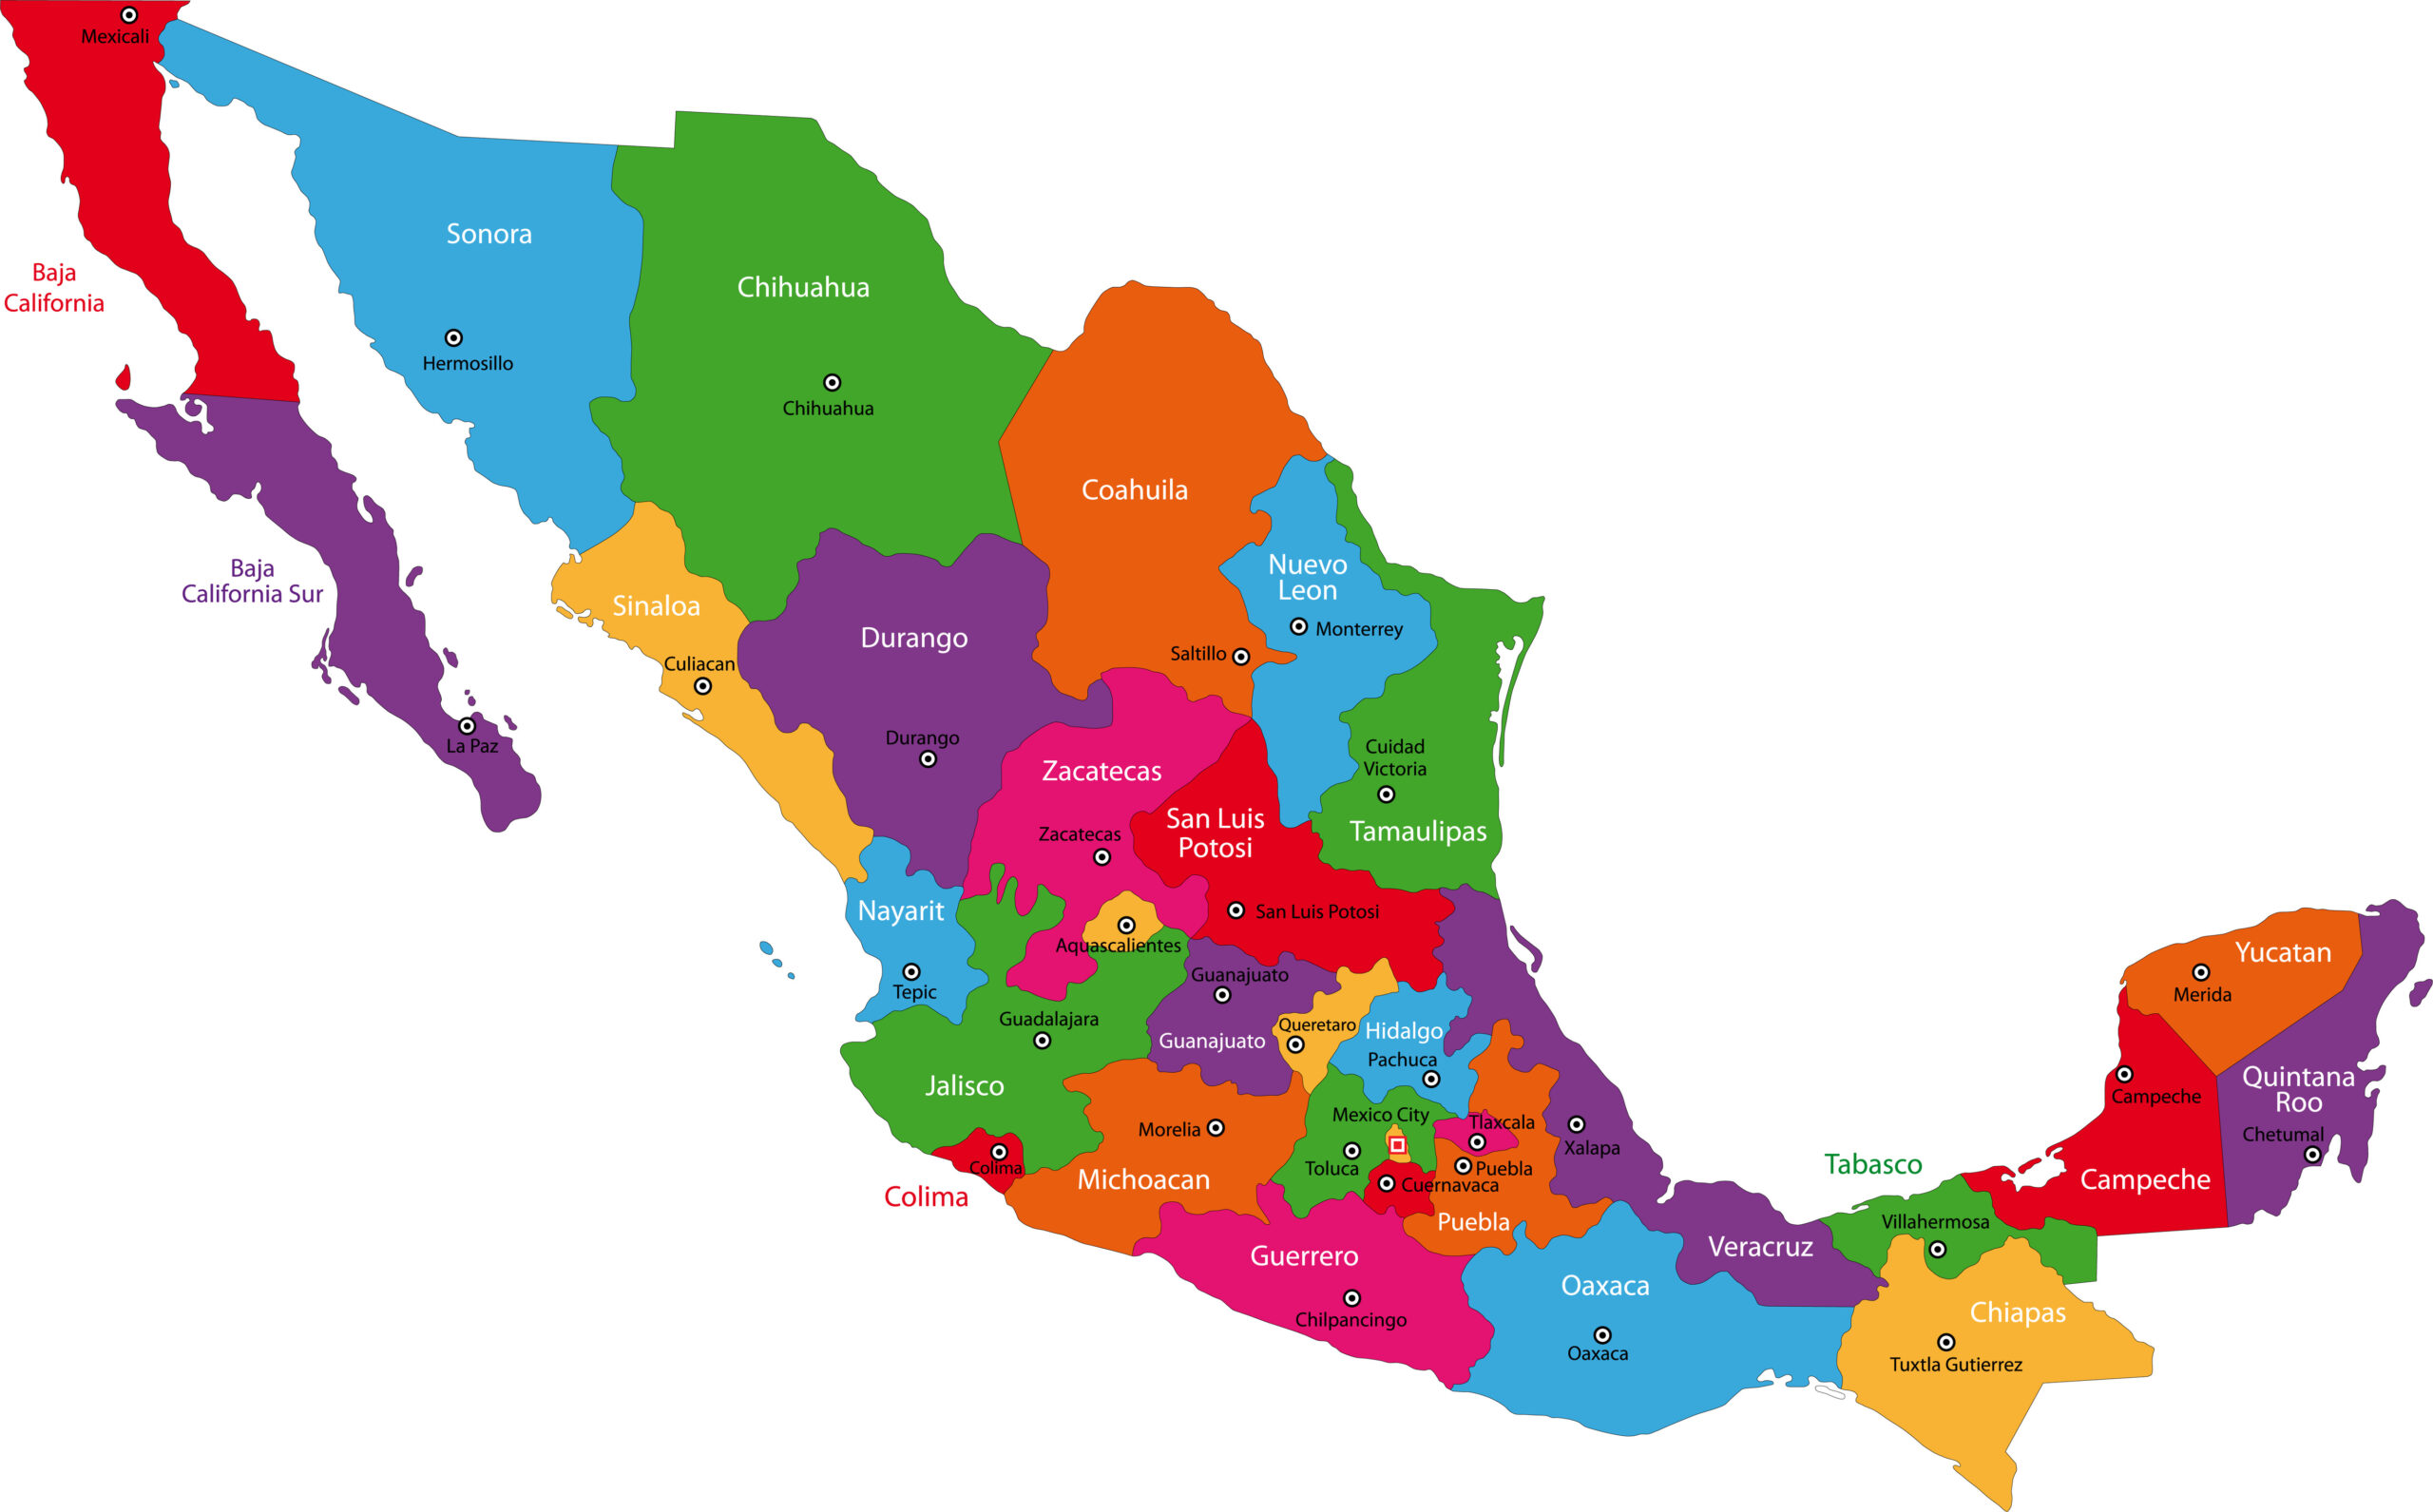 Mappa politica colorata del Messico che mostra gli stati e le principali città.